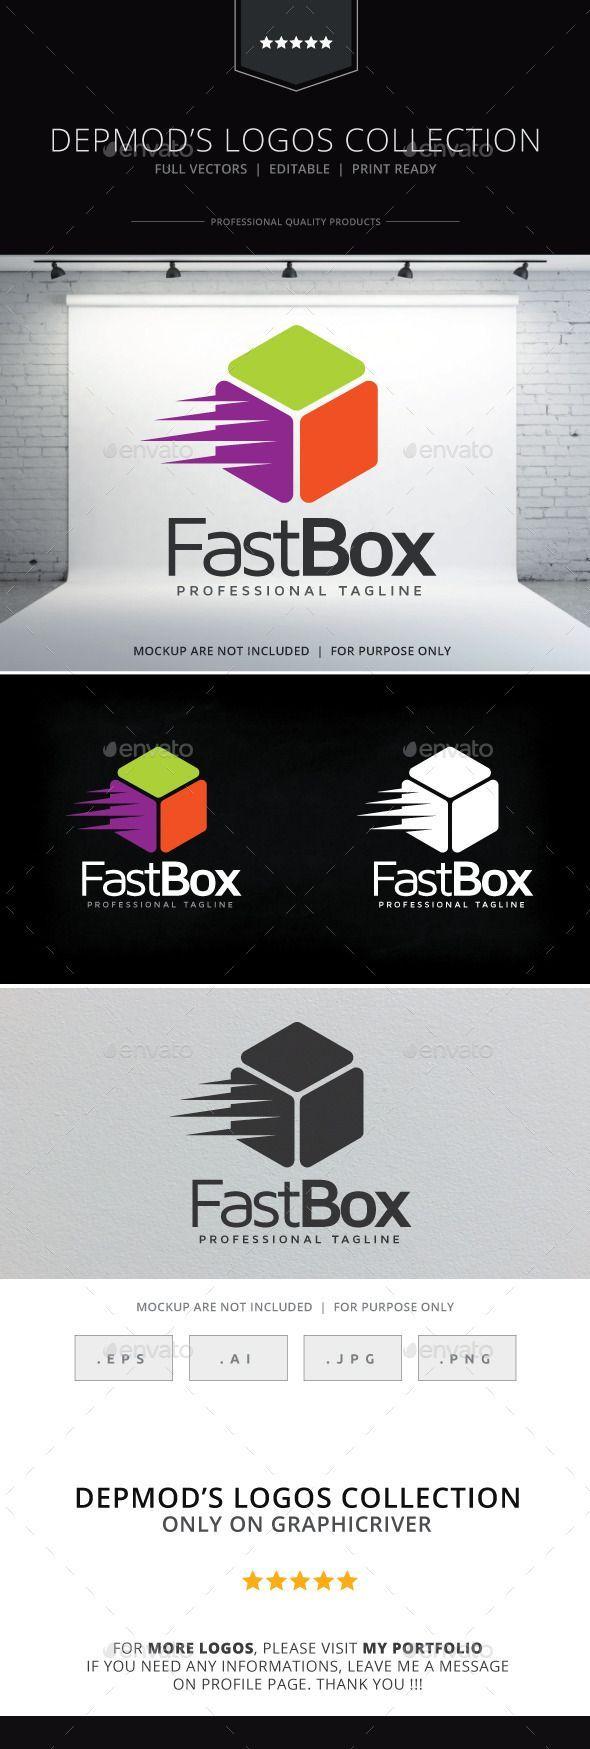 Box S Logo - Fast Box Logo. Logo Collection. Logos, Logo templates